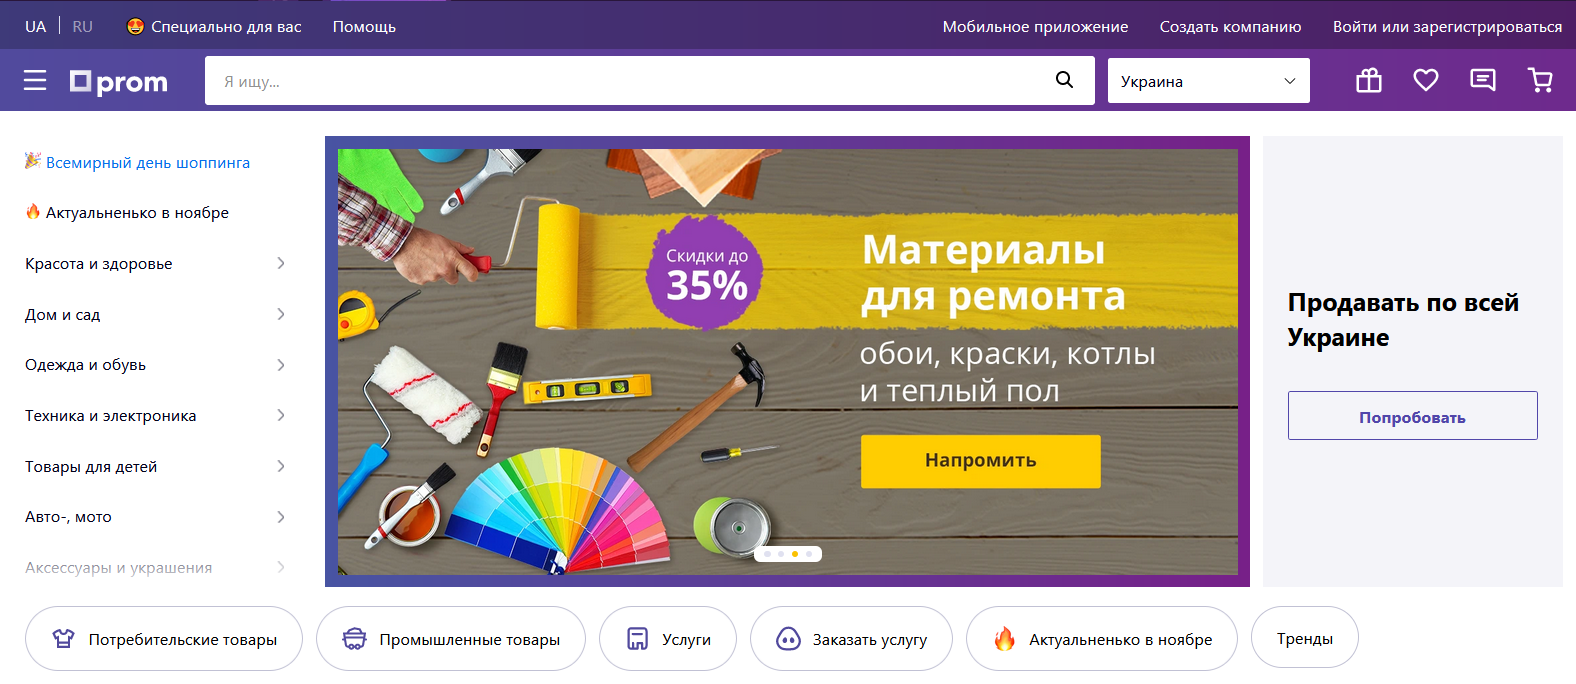 Come creare un negozio online redditizio su Prom.ua